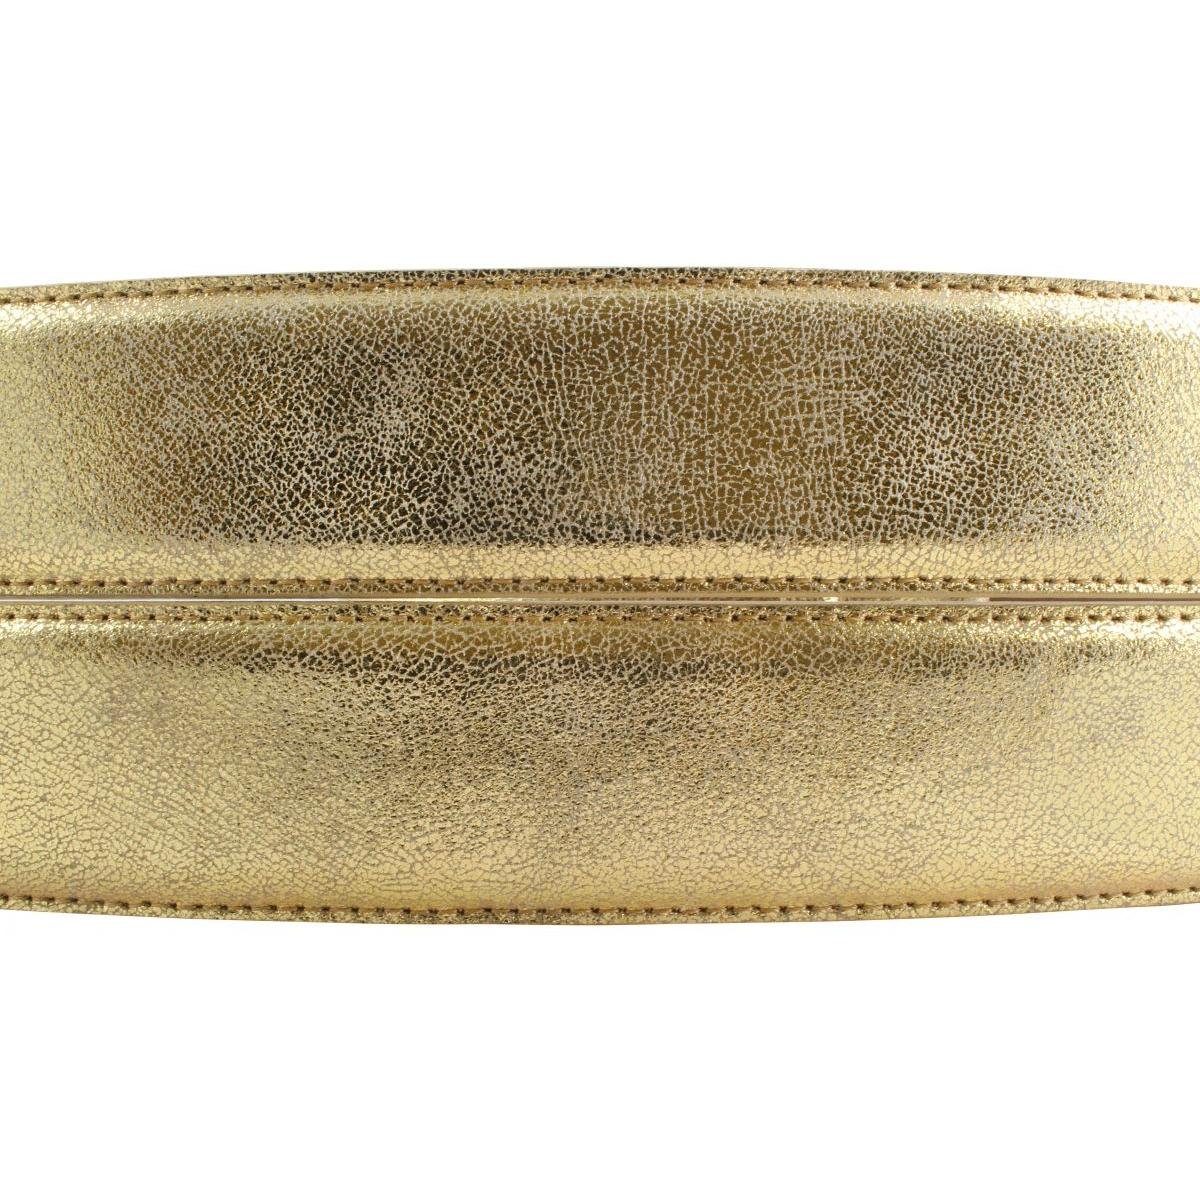 4 40mm BELTINGER - Bronze, cm Gürtel Gold - Metall-Le Metallic-Look Ledergürtel in Goldener Metall-Optik